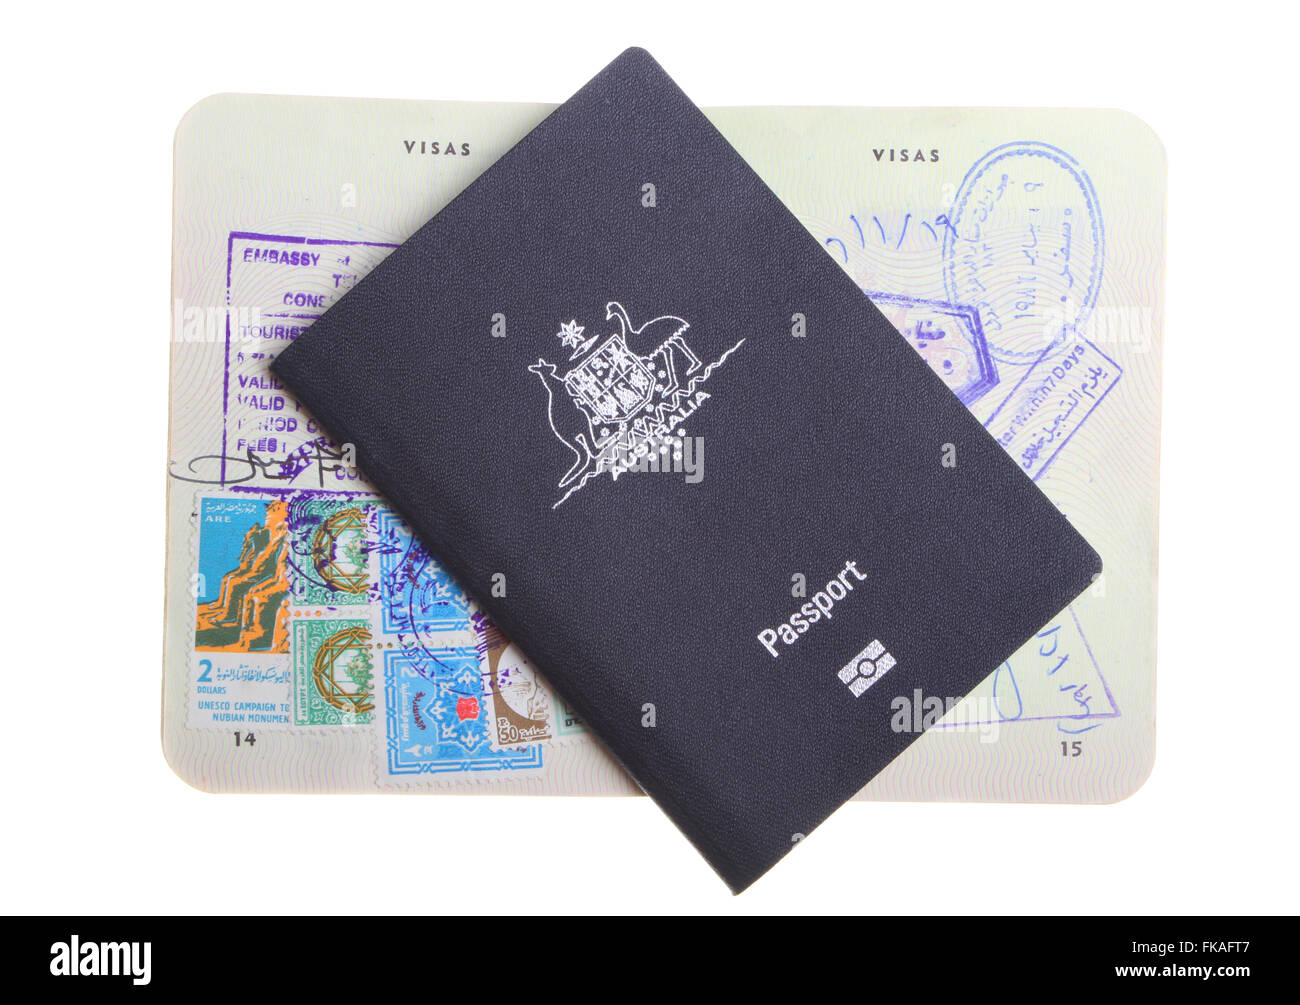 Passaporto australiano seduto su un vecchio passaporto aperto che mostra i visti sulle pagine isolati su sfondo bianco. Foto Stock